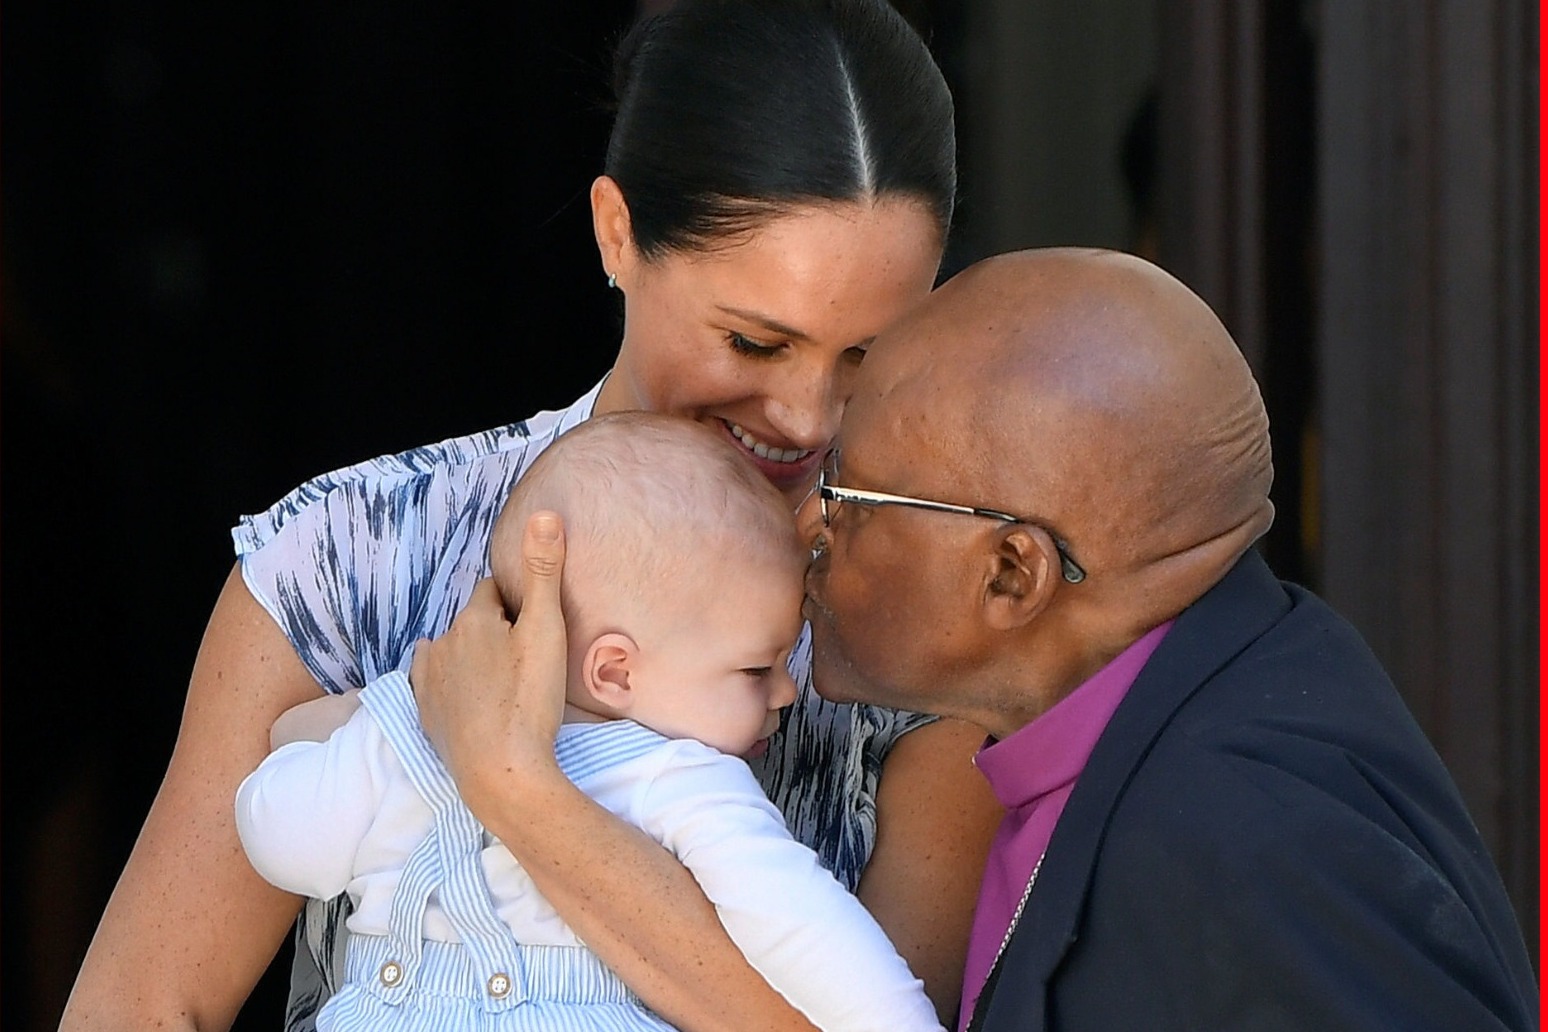 Archbishop Desmond Tutu dies aged 90 